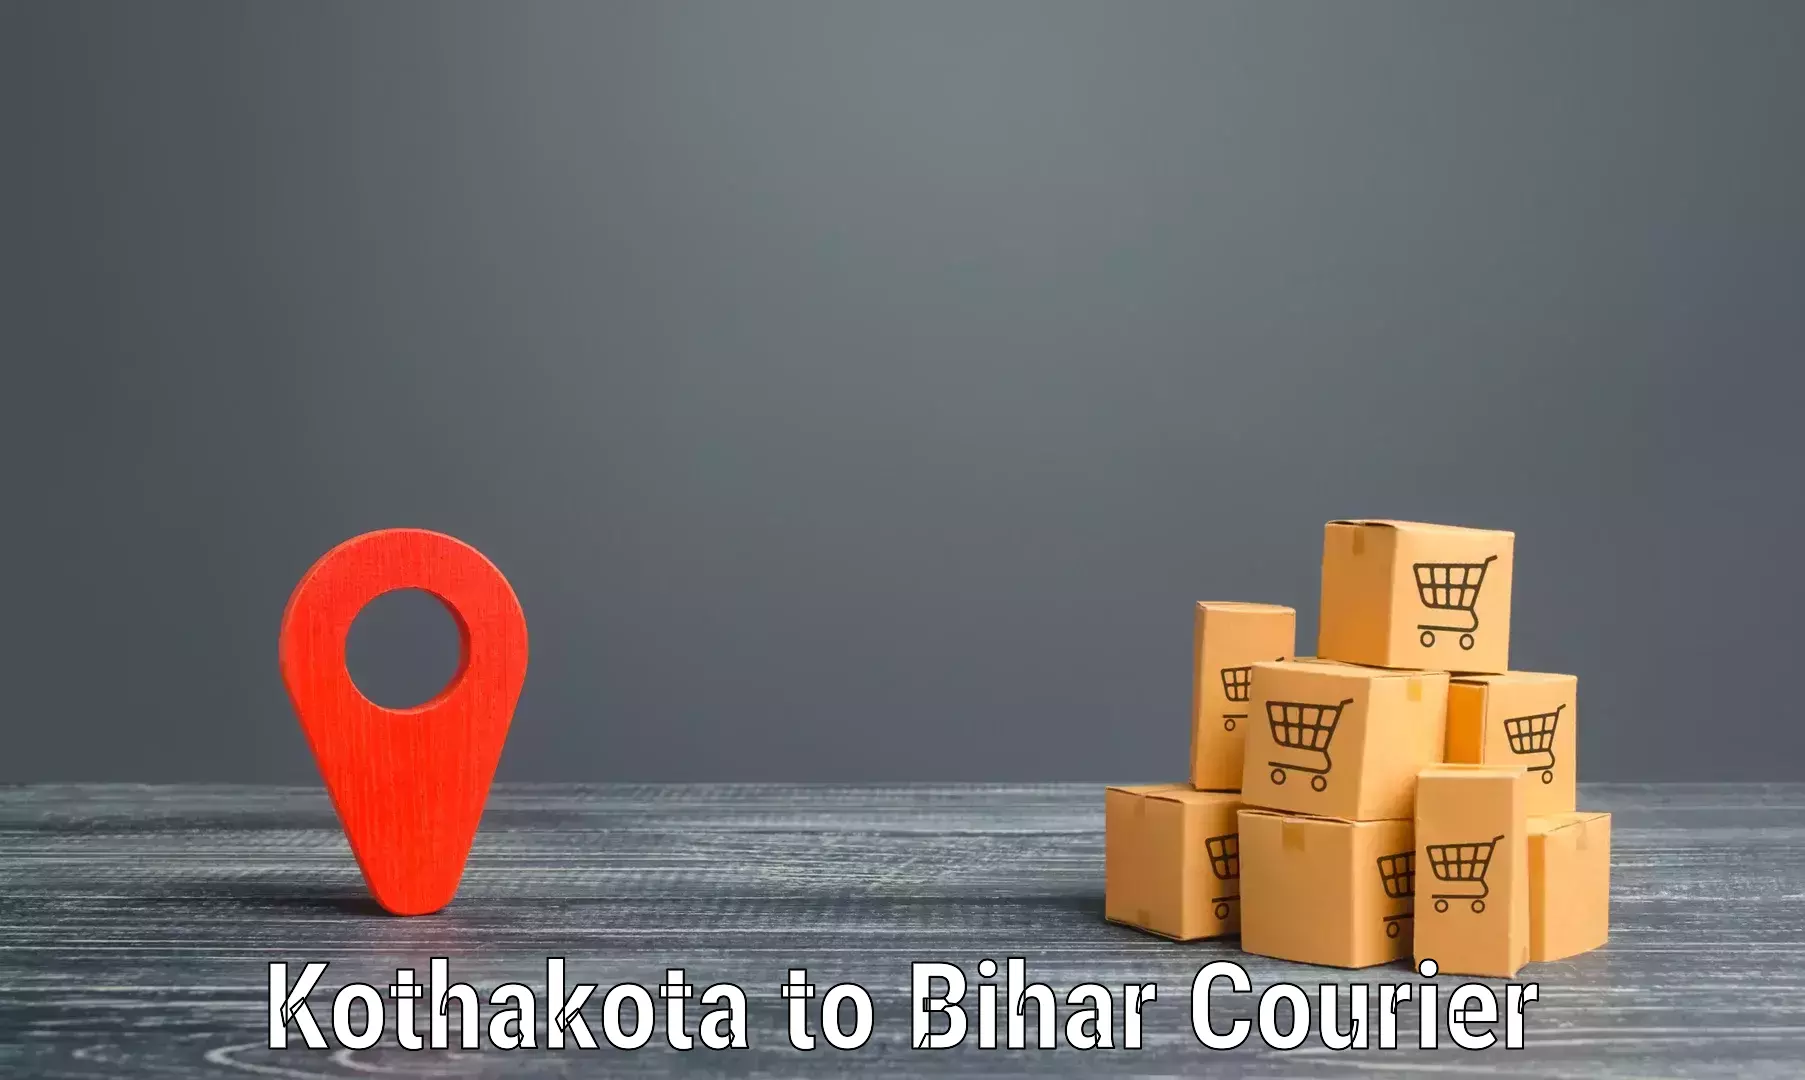 Premium courier services in Kothakota to Kochas